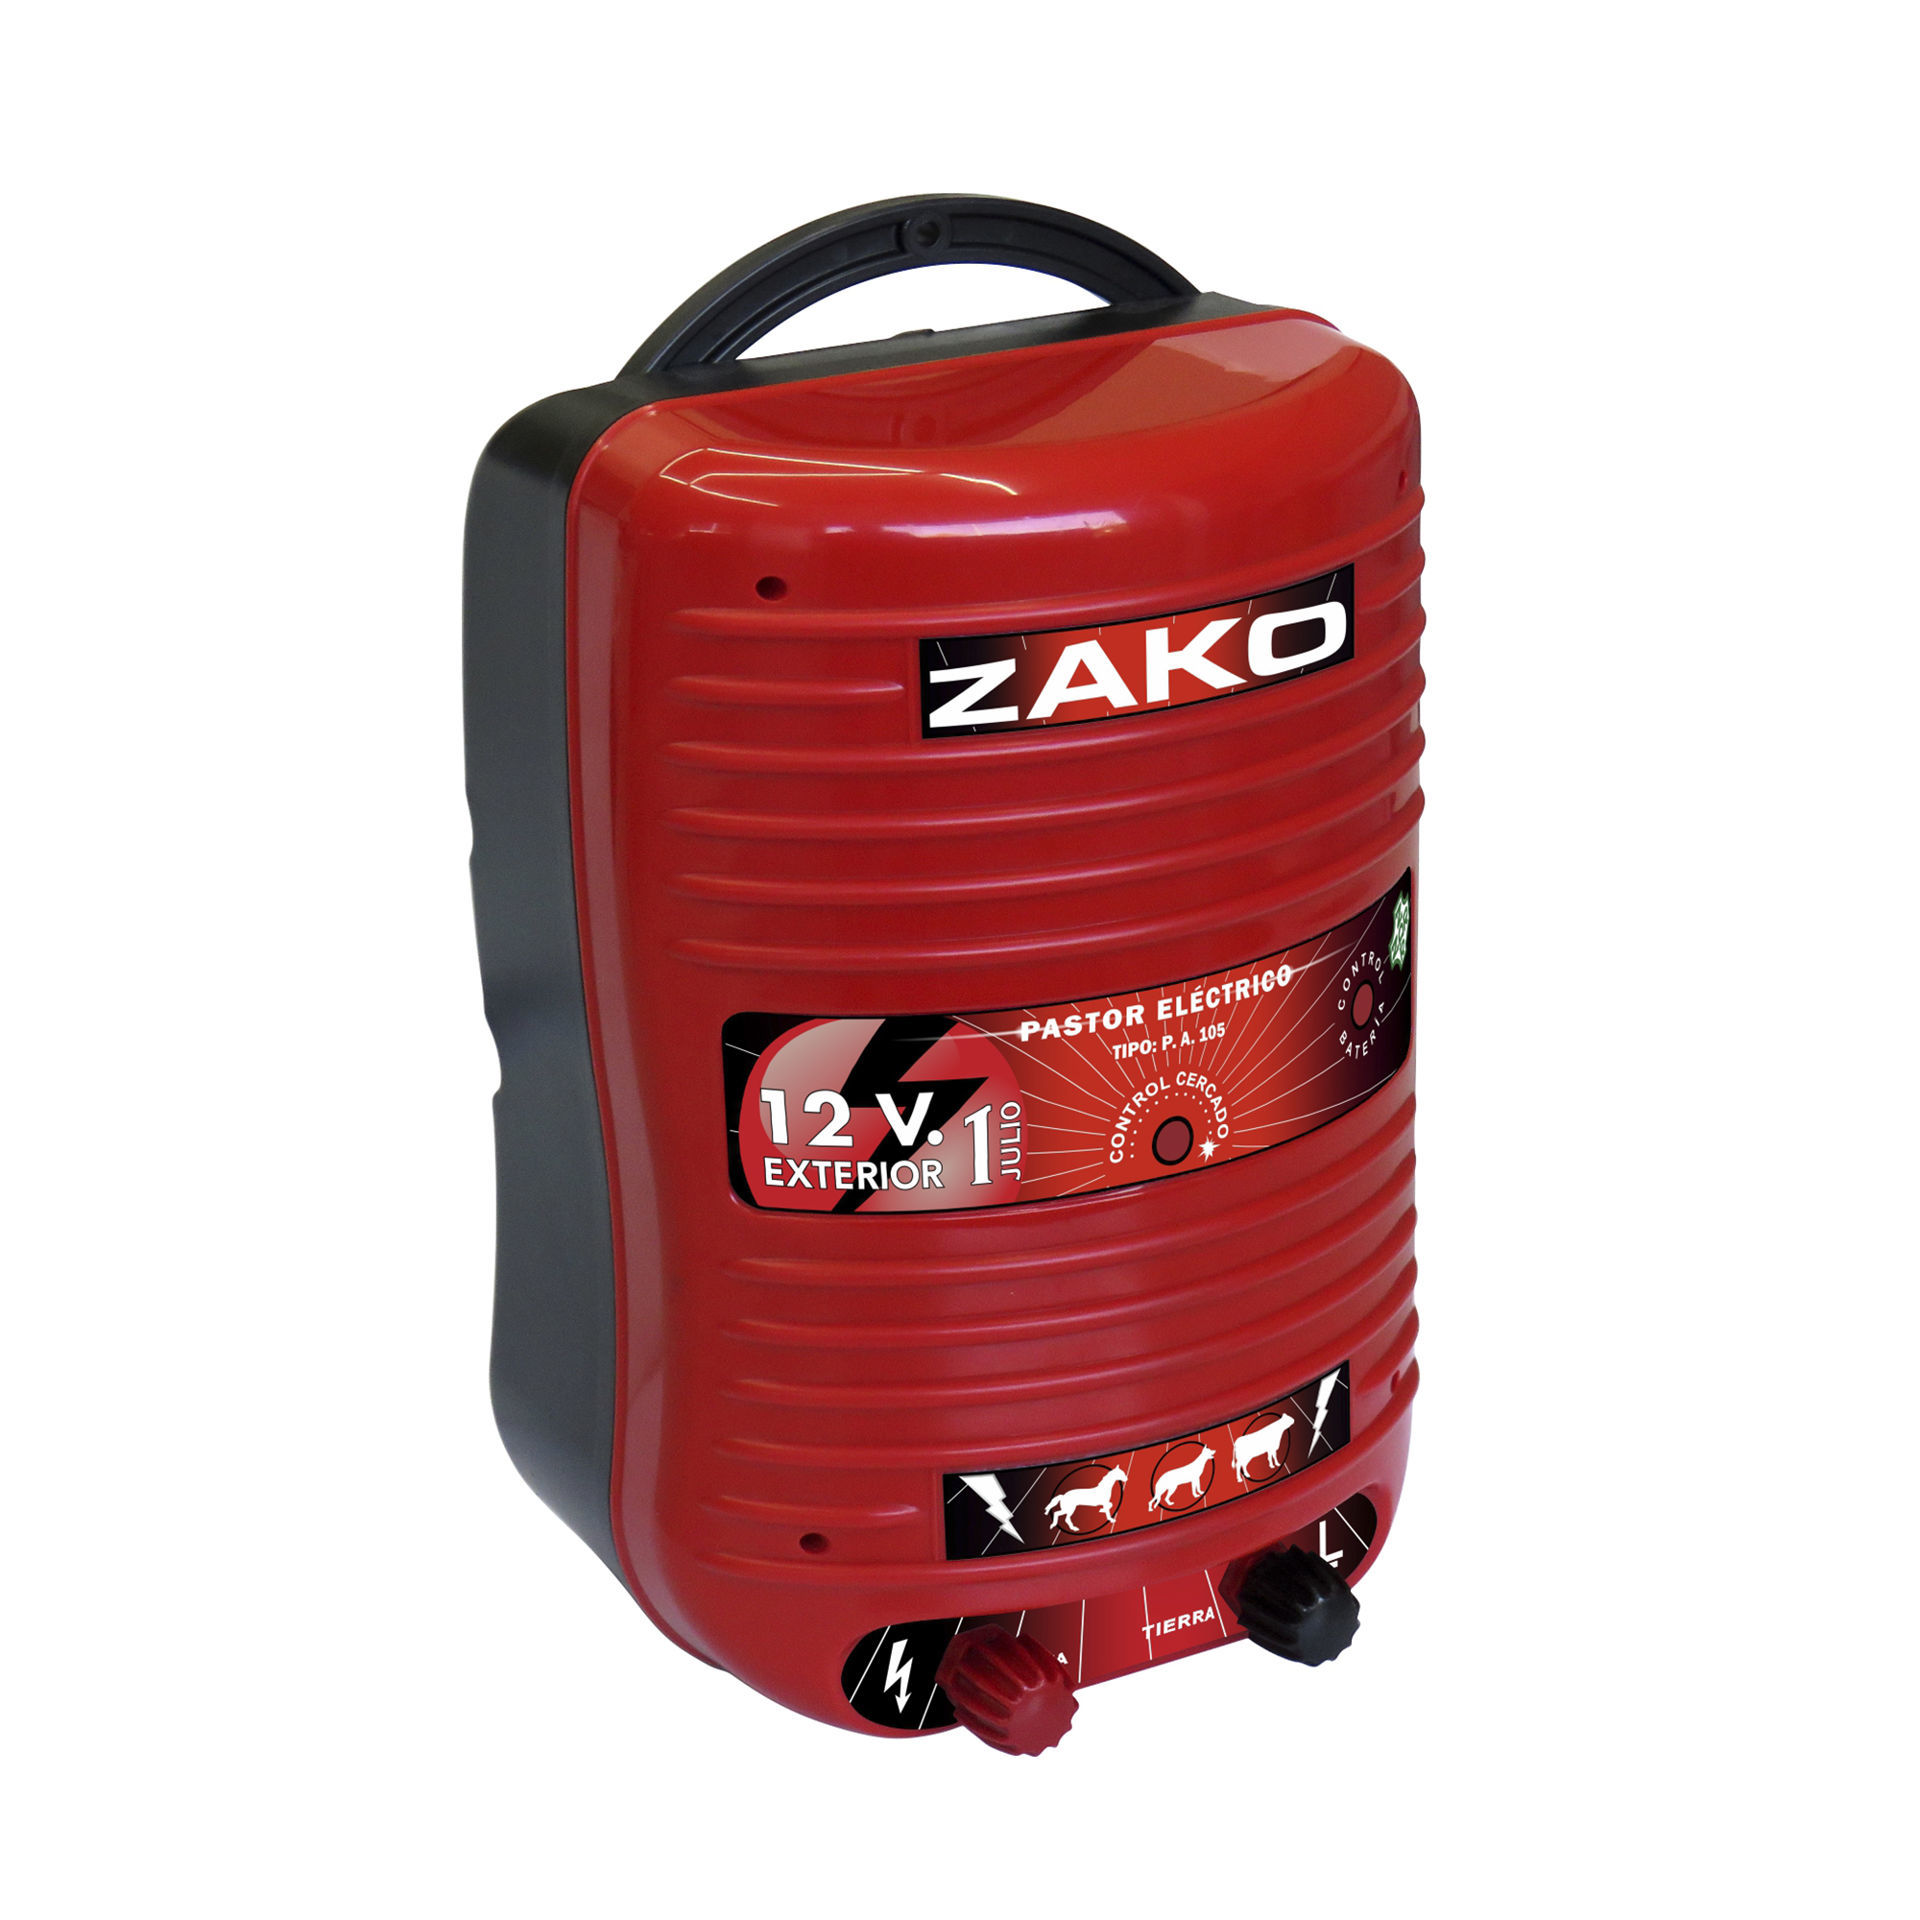 Pastor eléctrico a batería Zar Zako 12 V - Suministros Urquiza